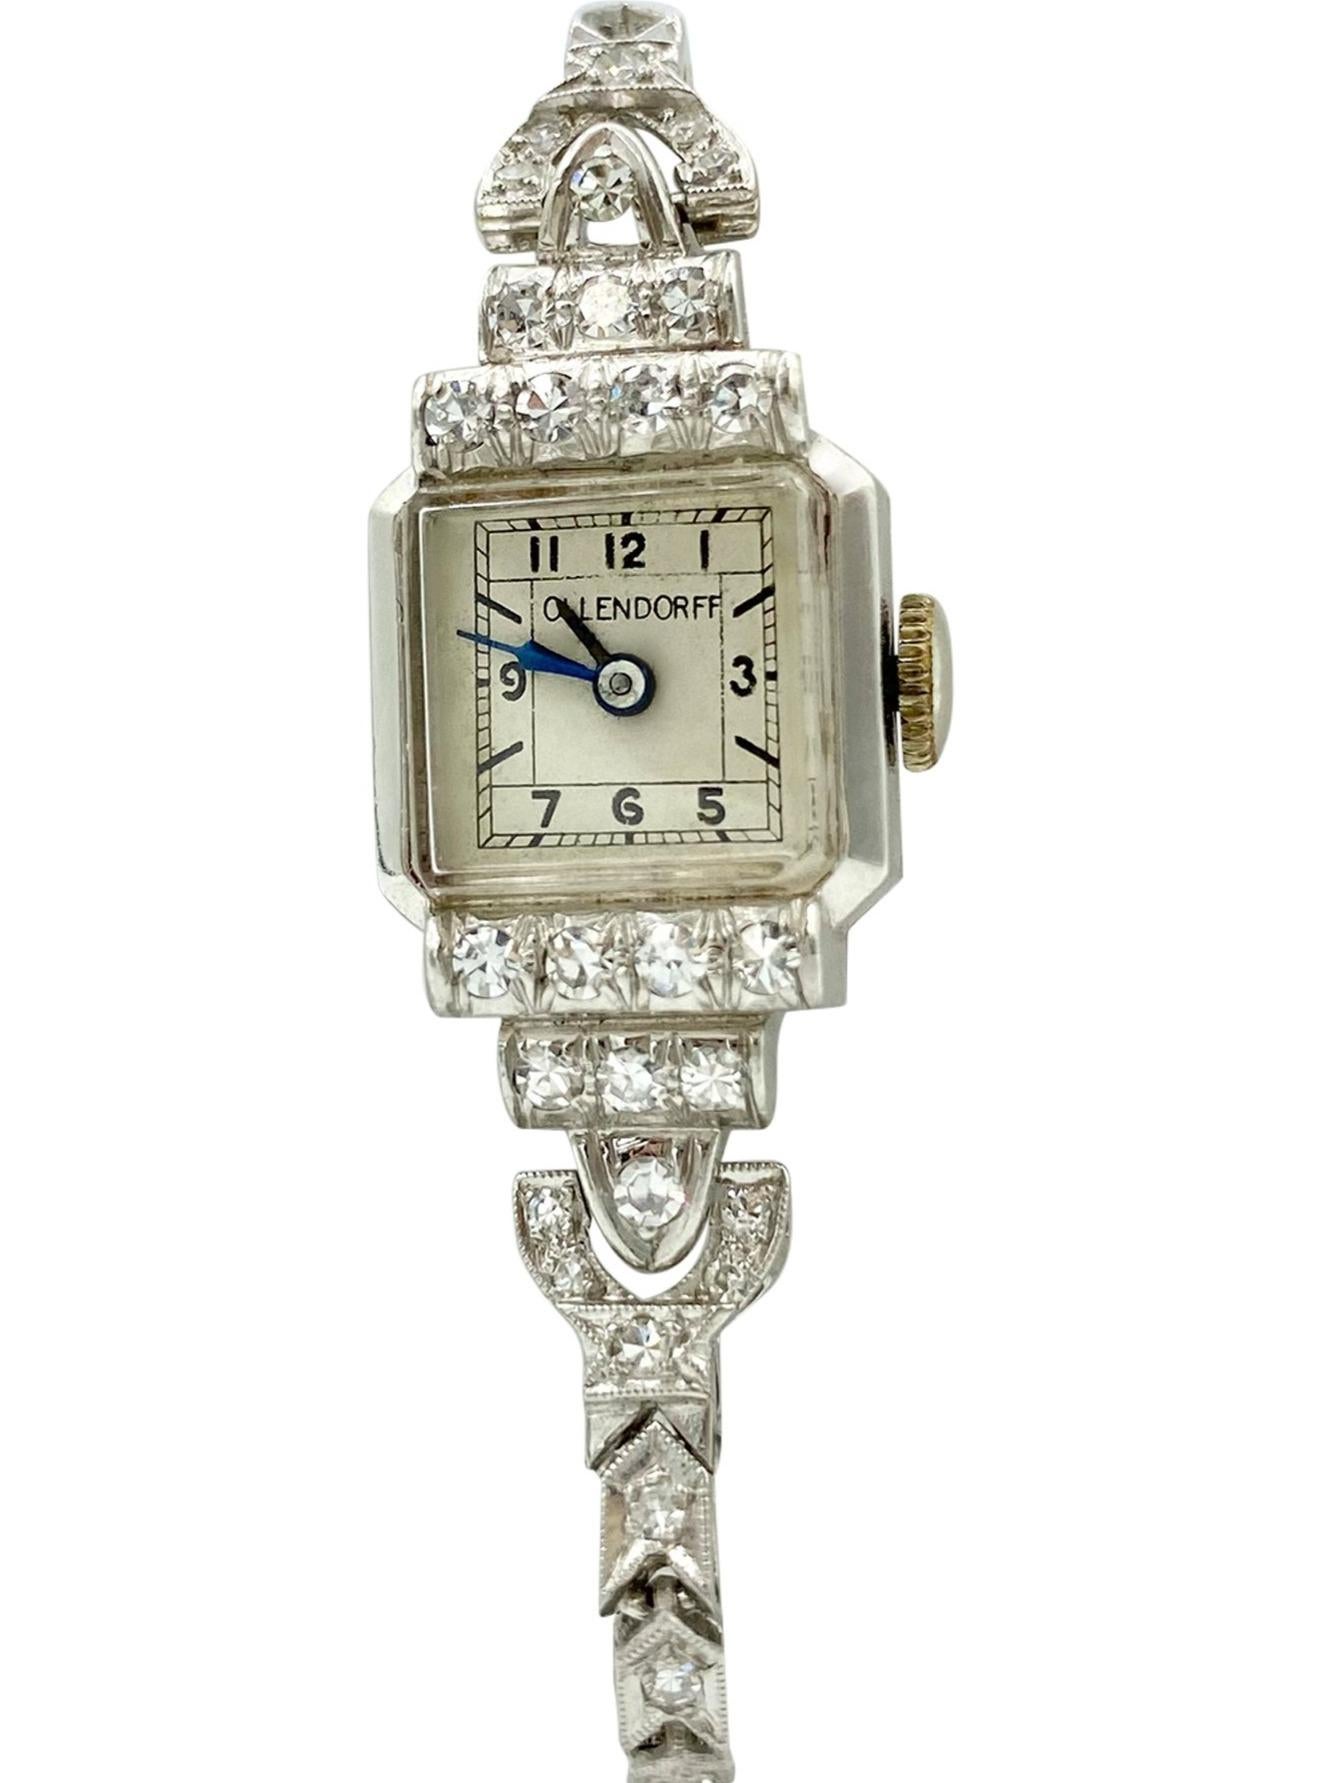 Das ist ein WOW, WOW... WOW!!!

Absolut atemberaubend Art Deco Platin und Diamanten Swiss-made, Federaufzug Armbanduhr von Ollendorff circa den späten 1920er Jahren! Es ist nicht nur ein Zeitmesser, sondern ein wunderschönes, luxuriöses und